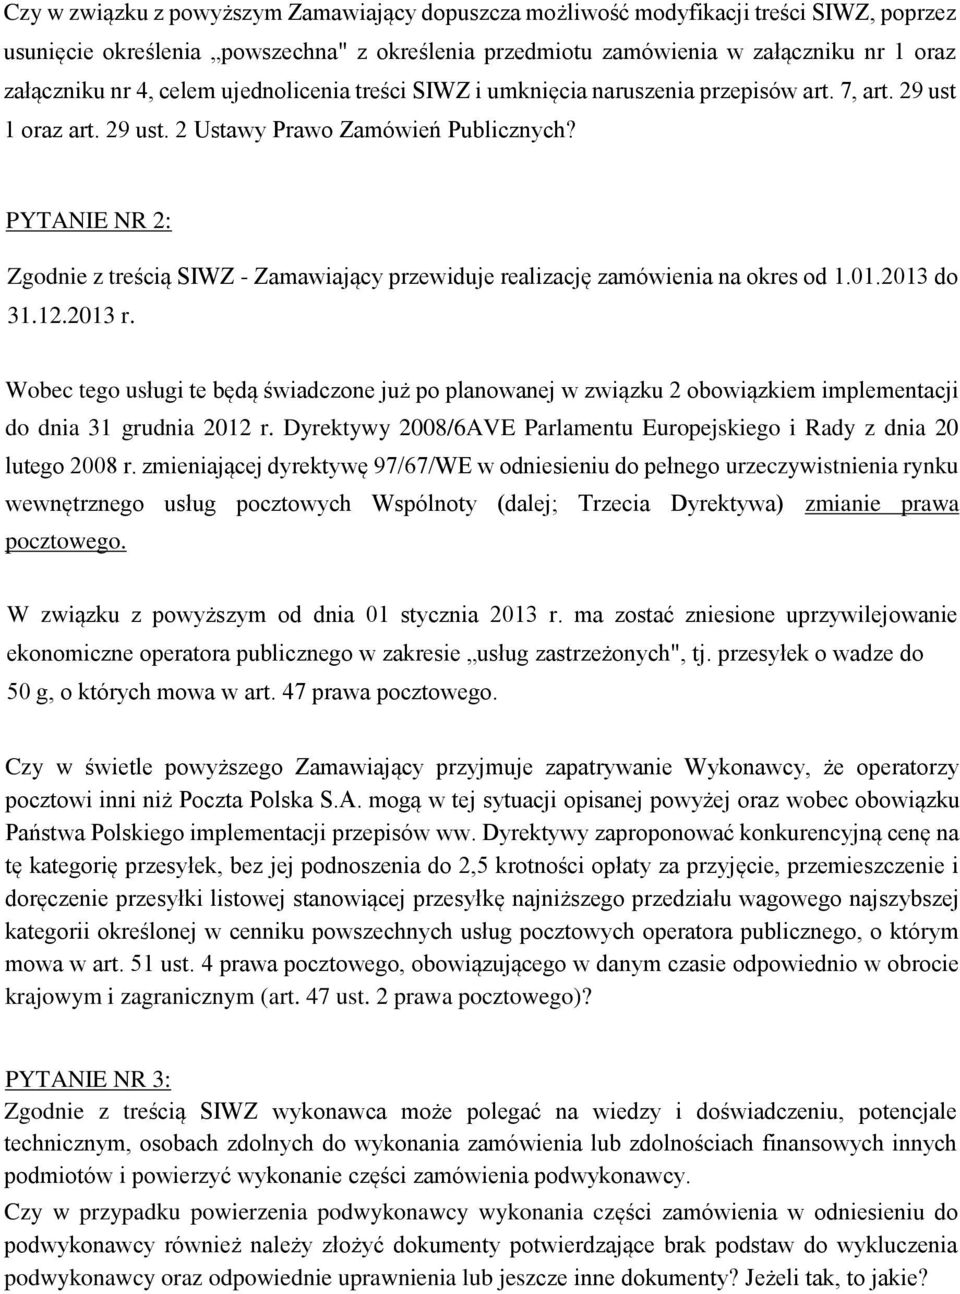 PYTANIE NR 2: Zgodnie z treścią SIWZ - Zamawiający przewiduje realizację zamówienia na okres od 1.01.2013 do 31.12.2013 r.